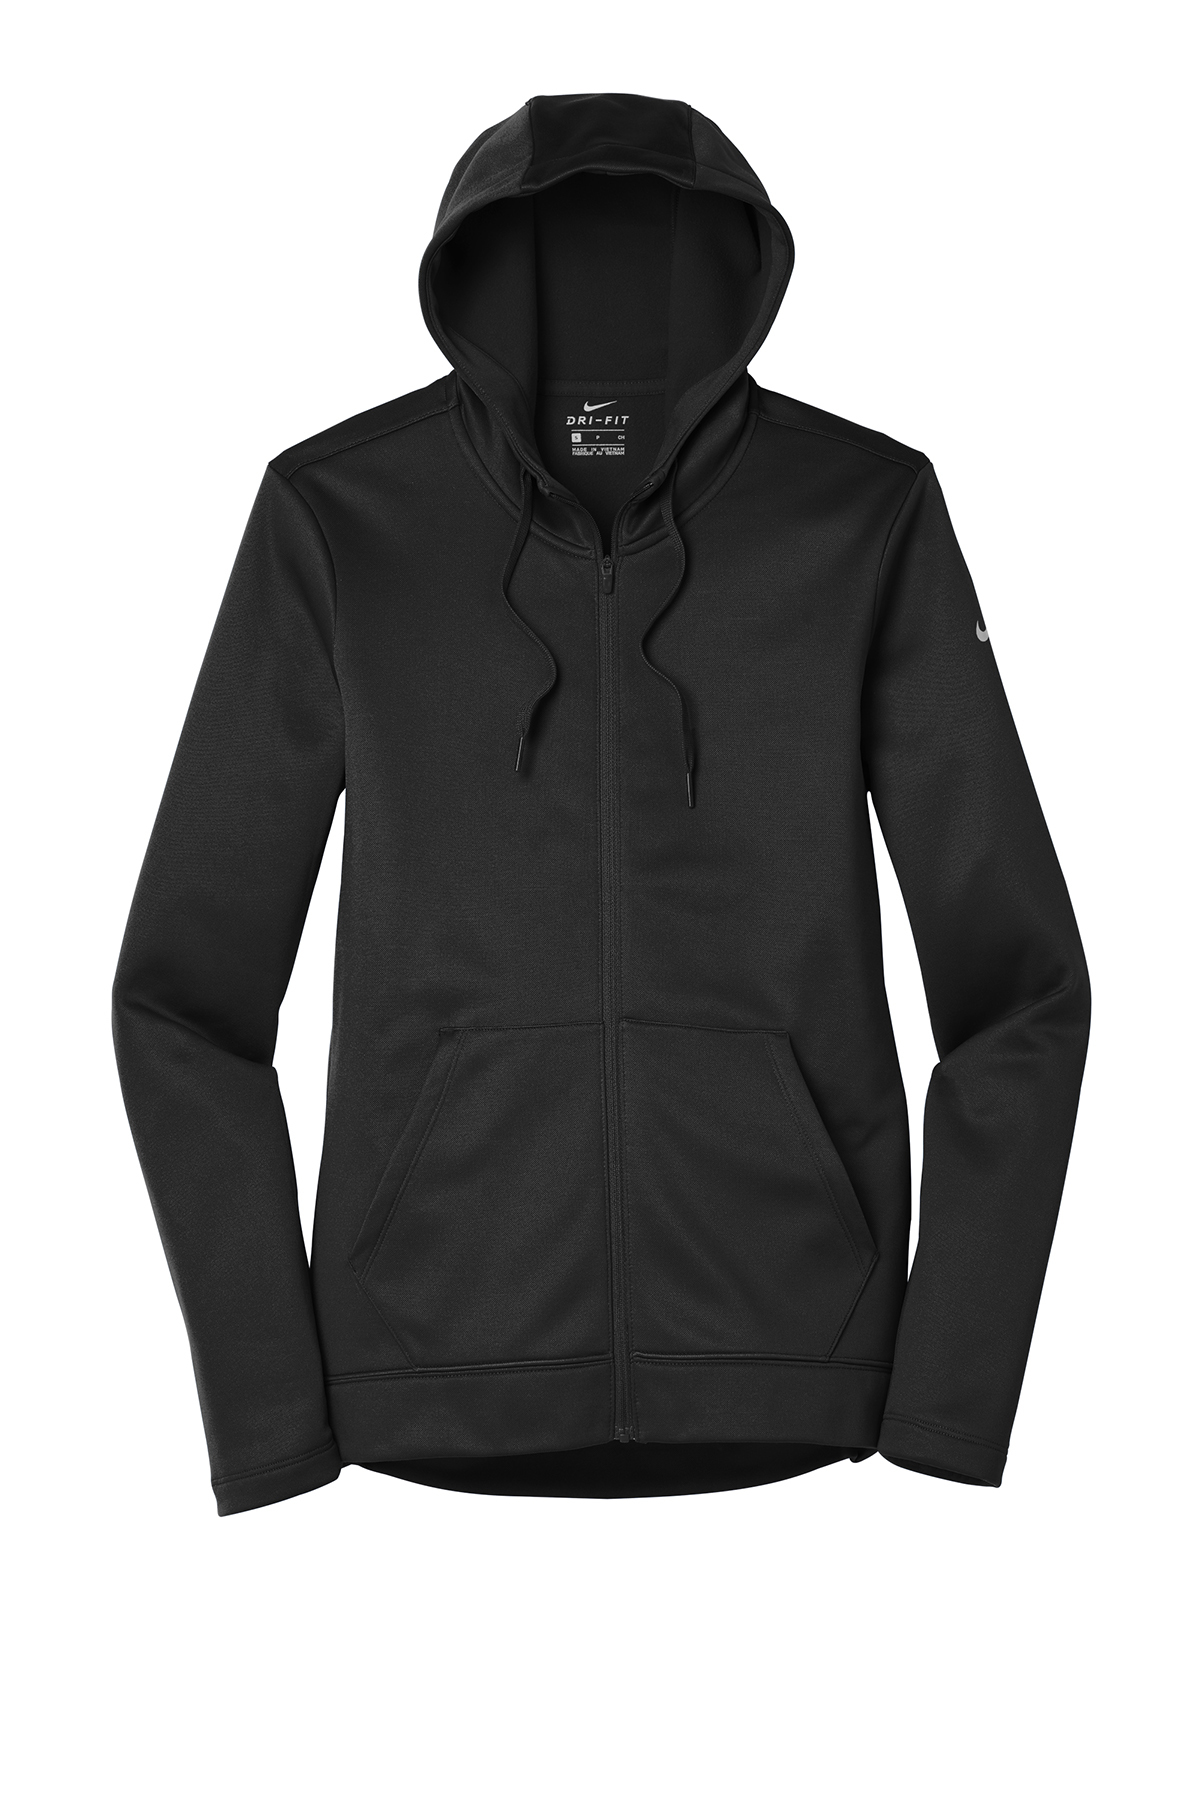 Nike Ladies Therma-FIT Full-Zip Fleece Hoodie | Product | SanMar